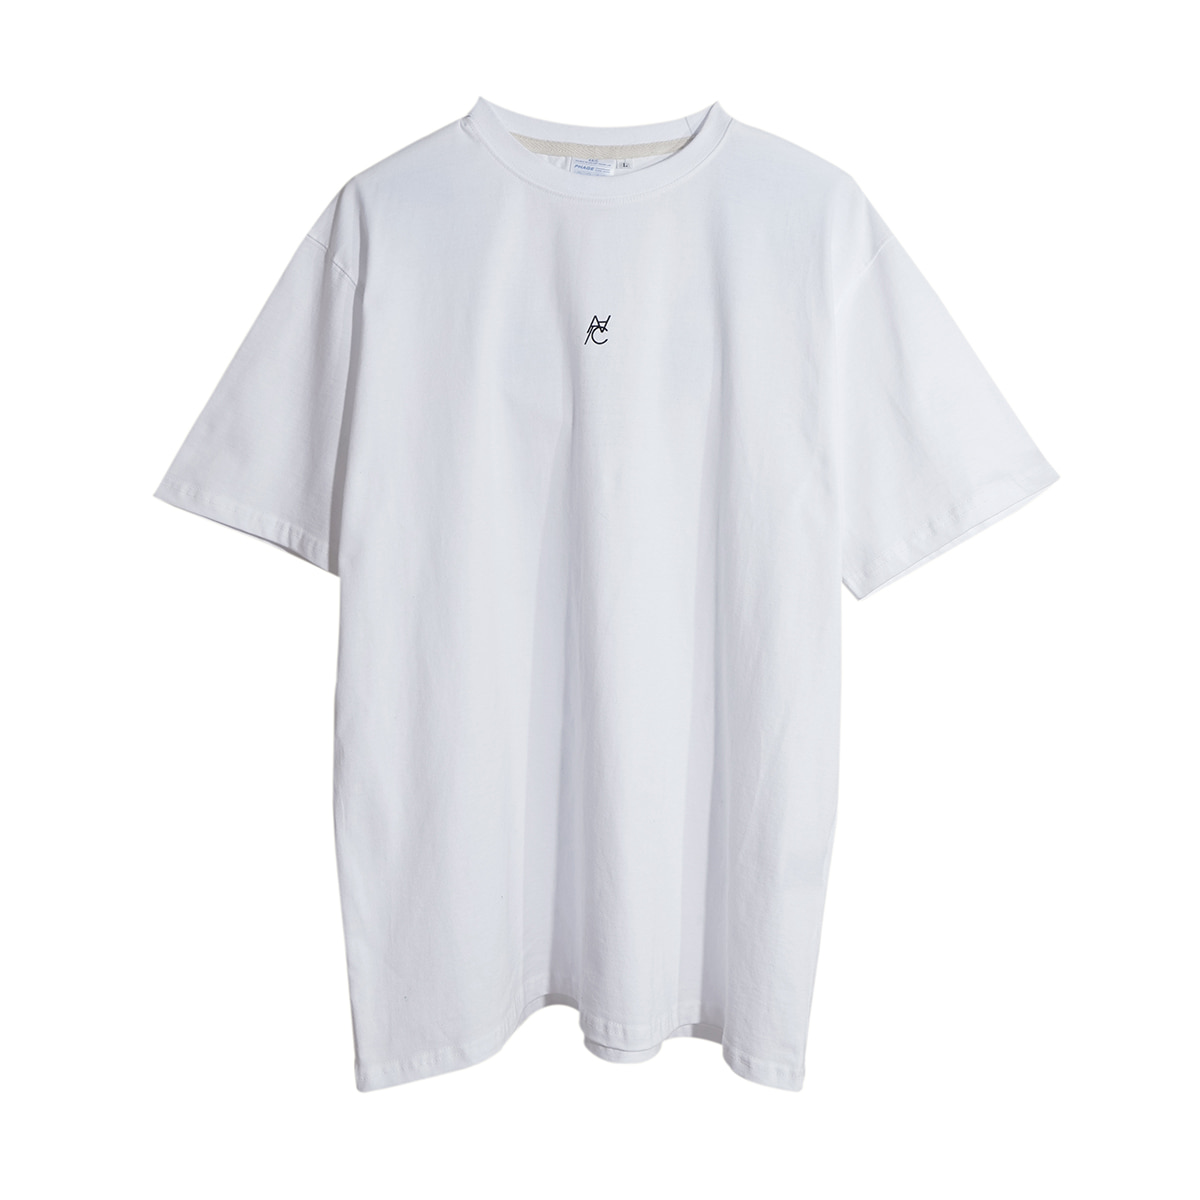 G.Stwerk Luminous T-shirt (white)